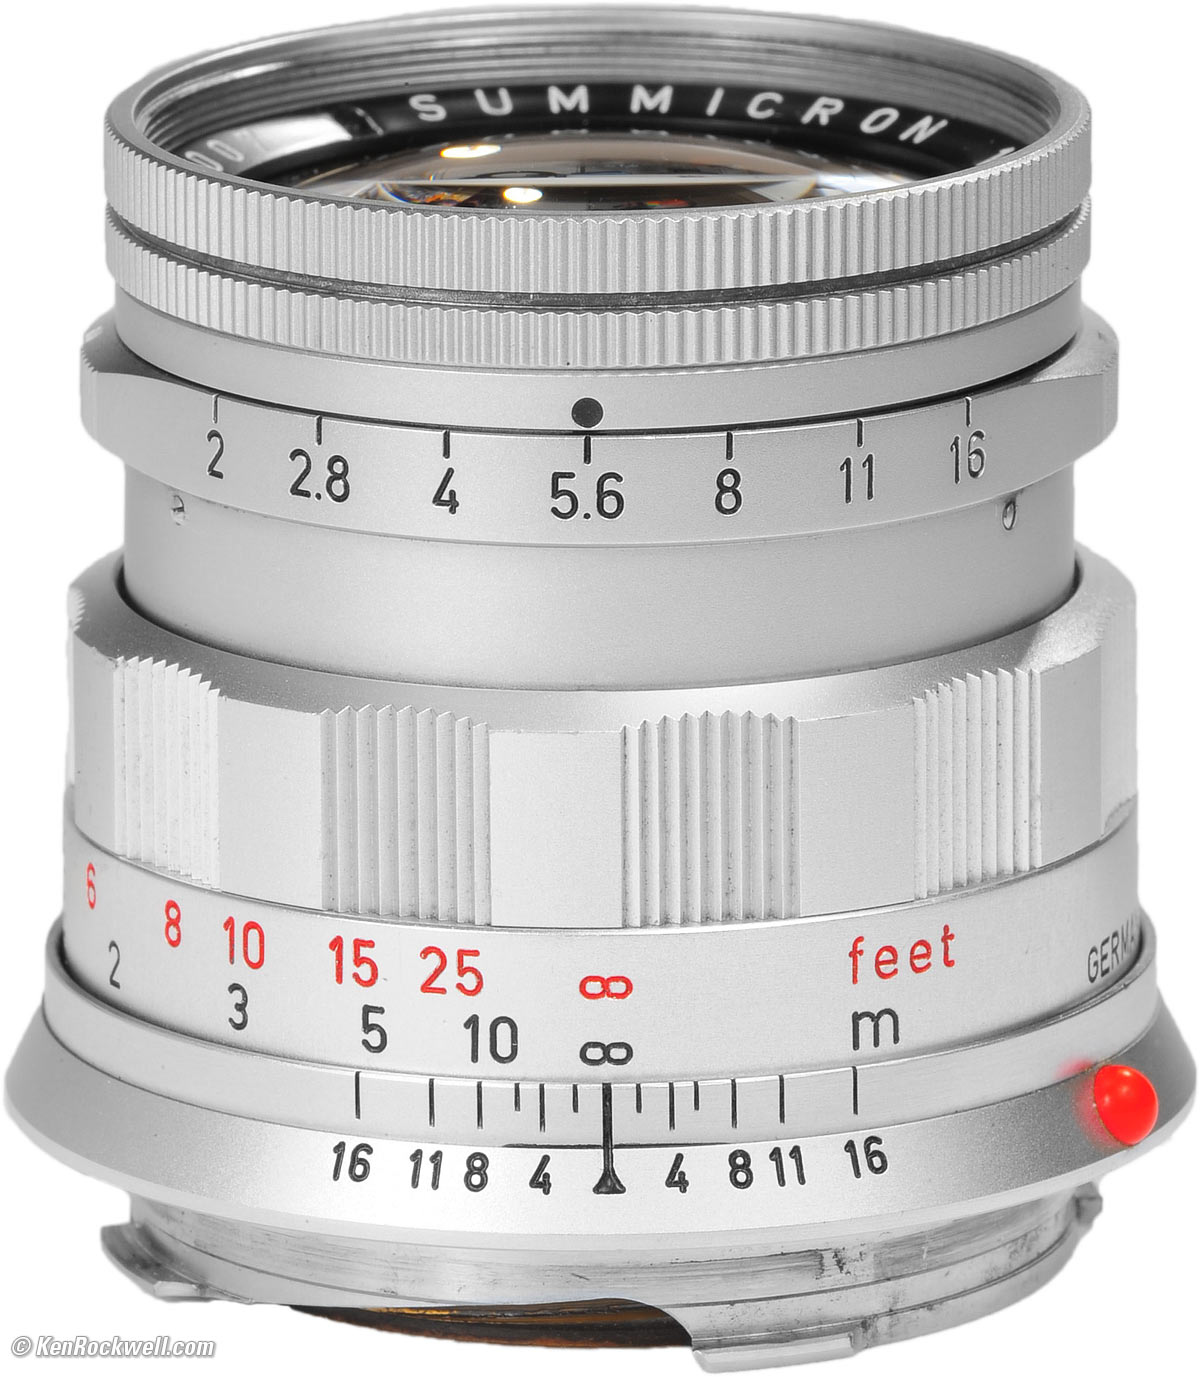 ライカ ズミクロン 50mm F2 2nd Mマウント - カメラ